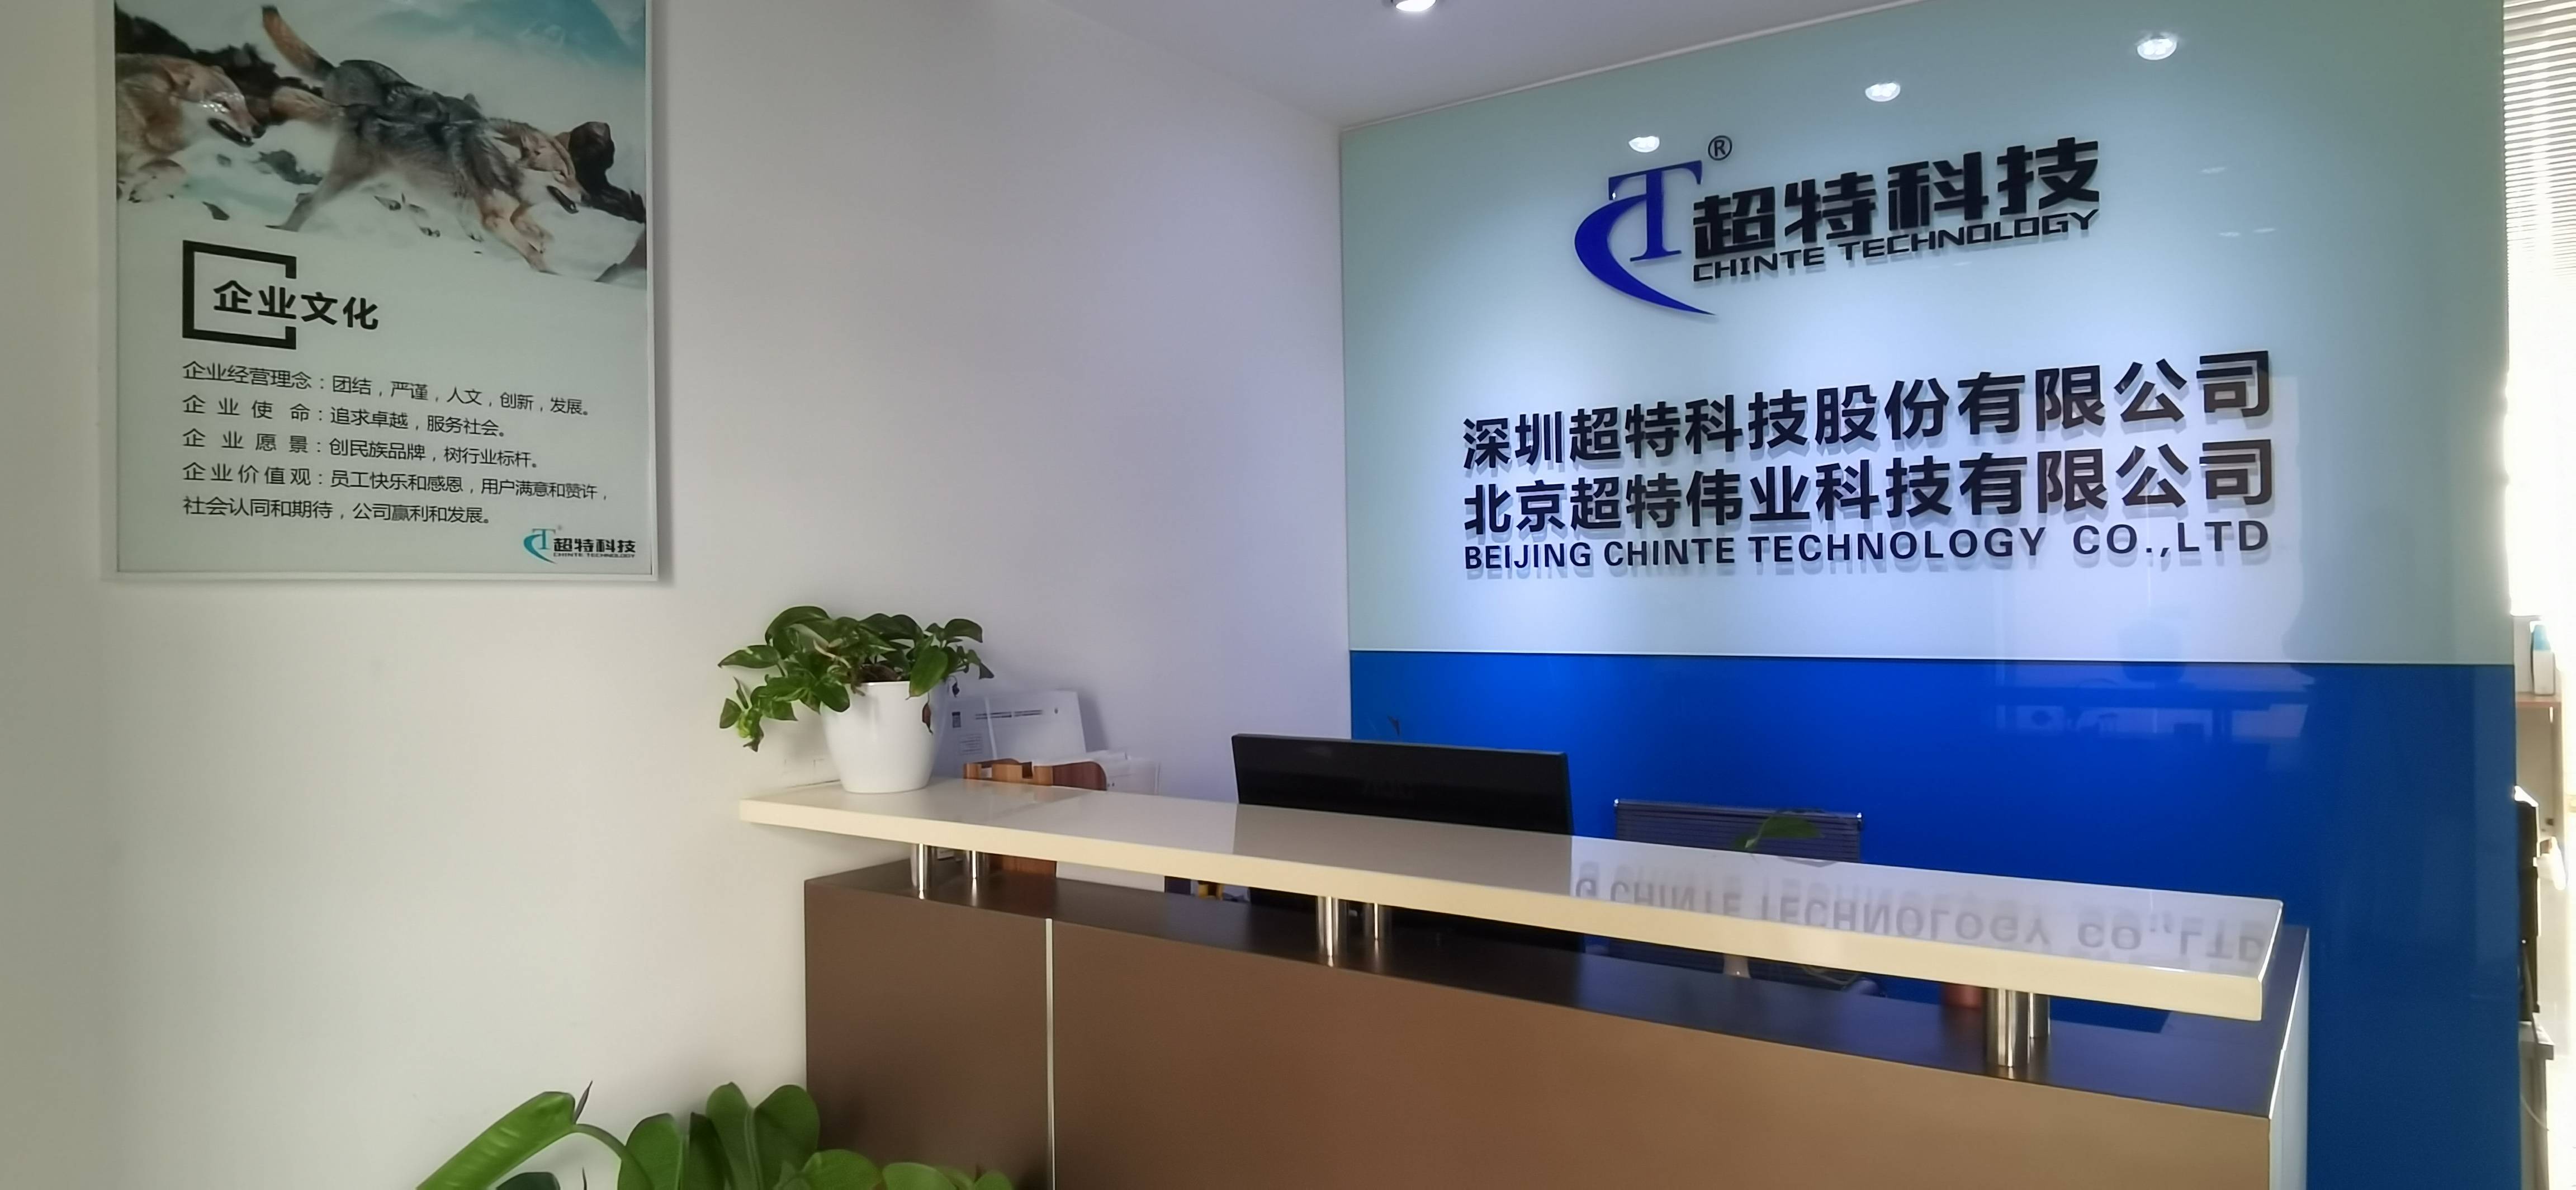 开始加入超特科技北京分公司——北京超特伟业科技有限公司,从实习生